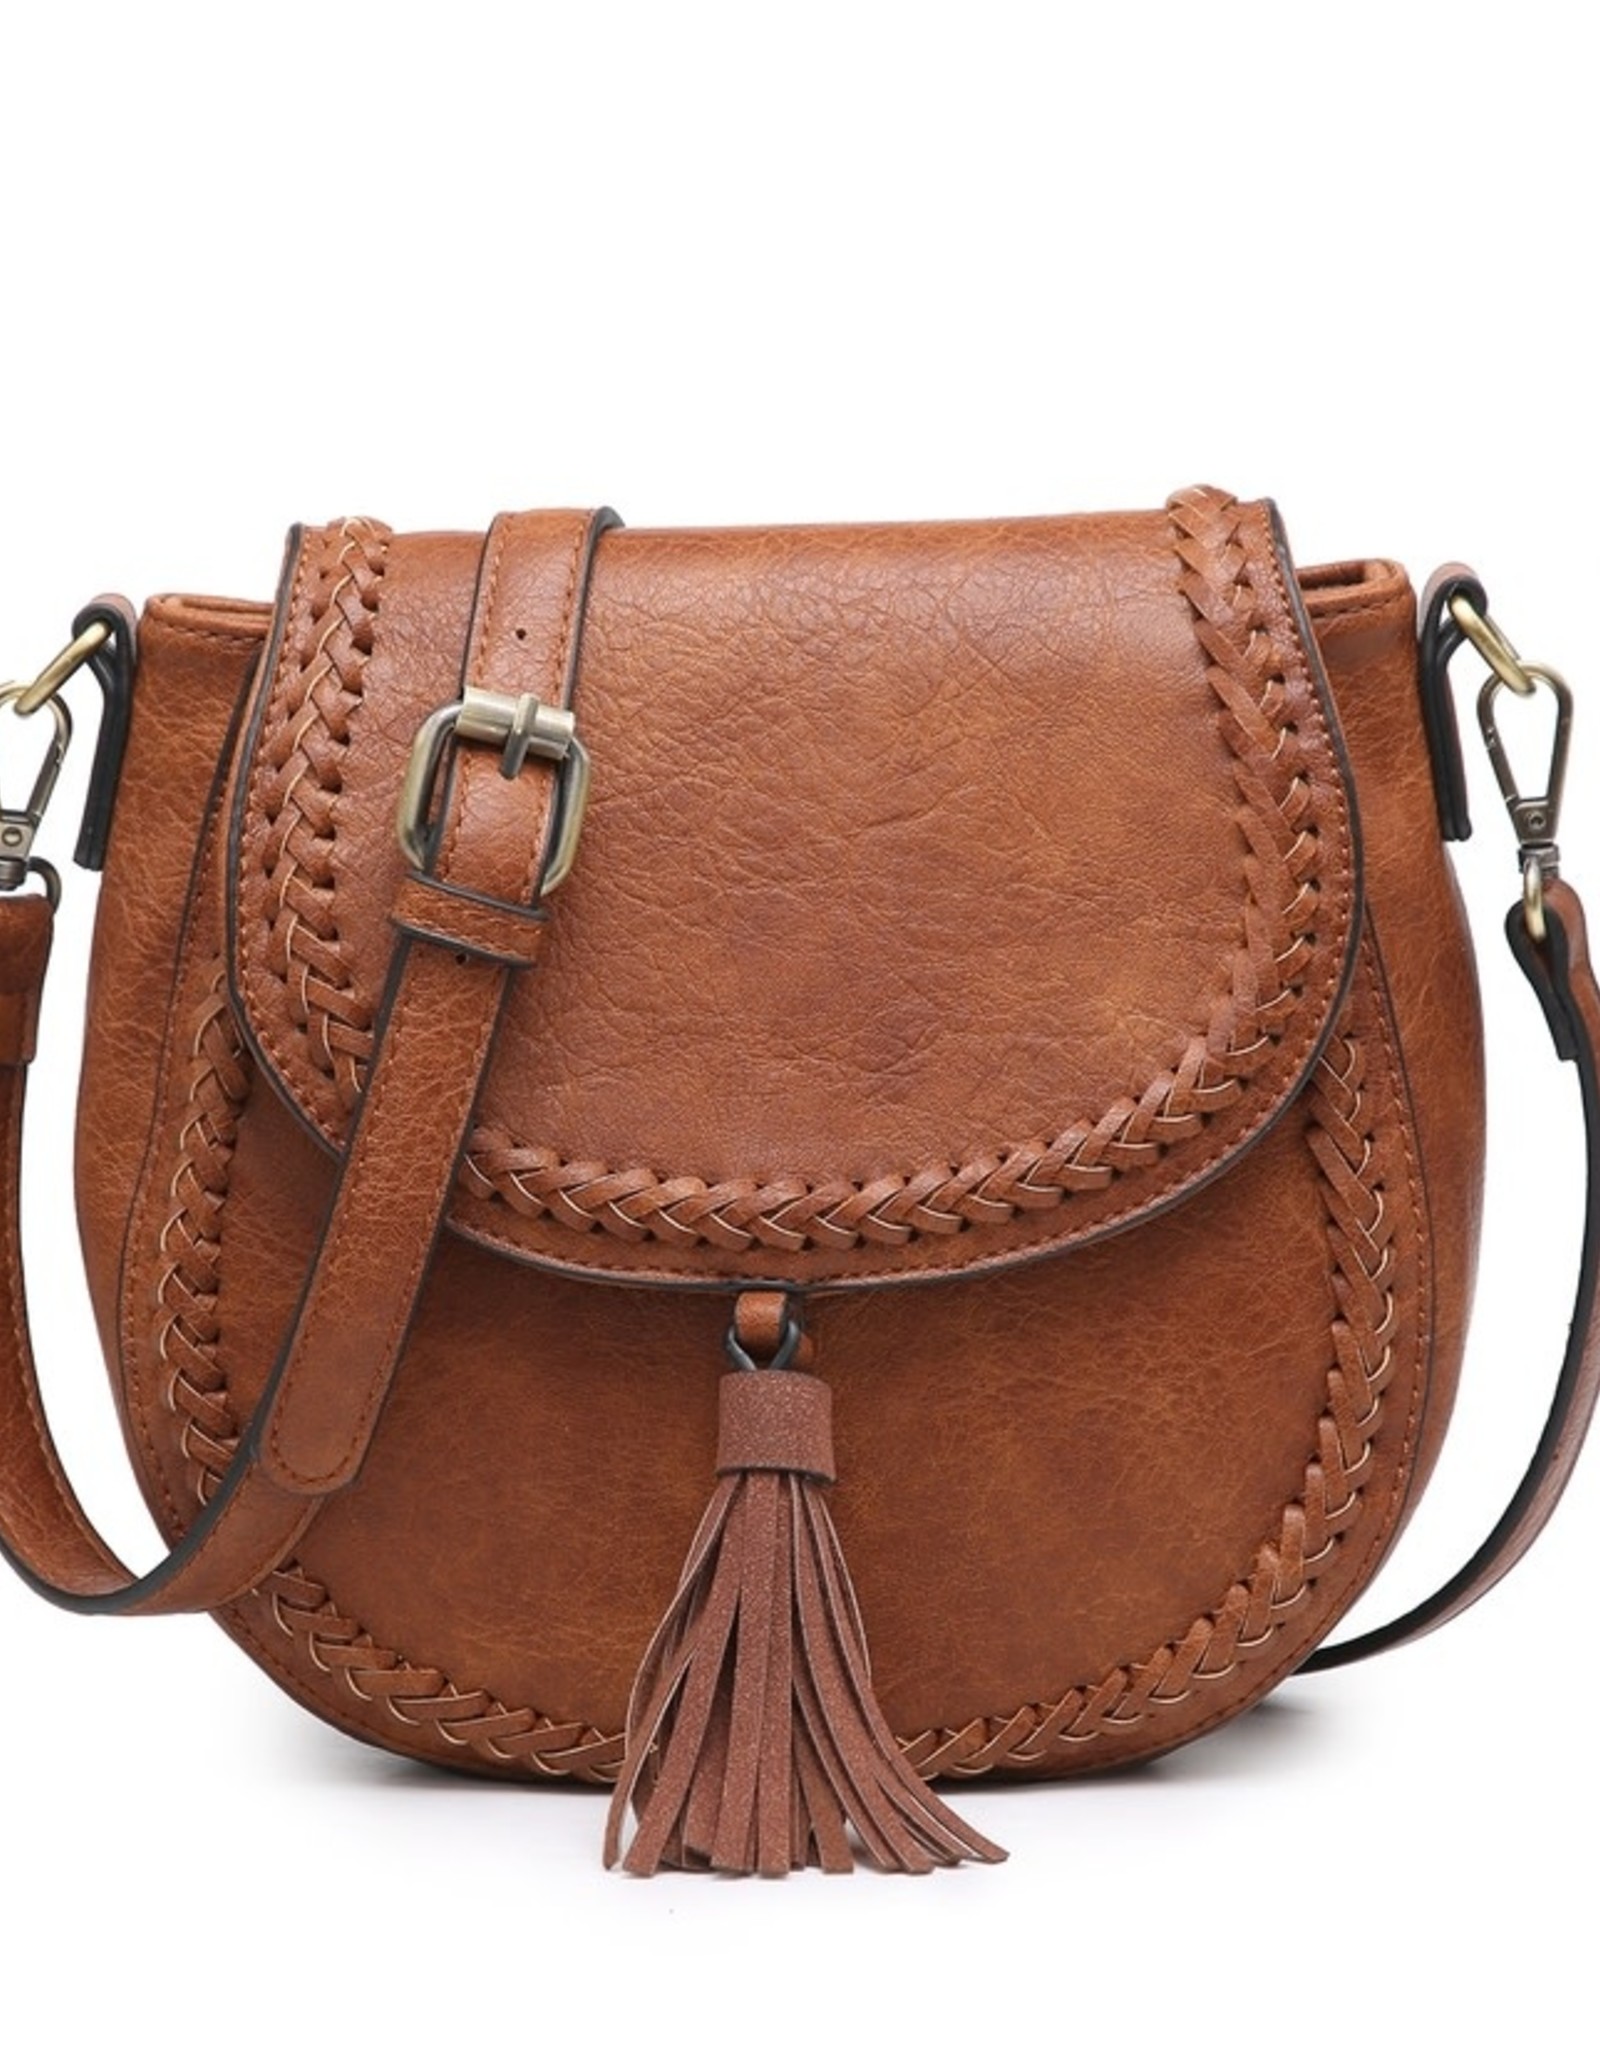 Jen & Co. Front Tassel Saddle Bag Purse